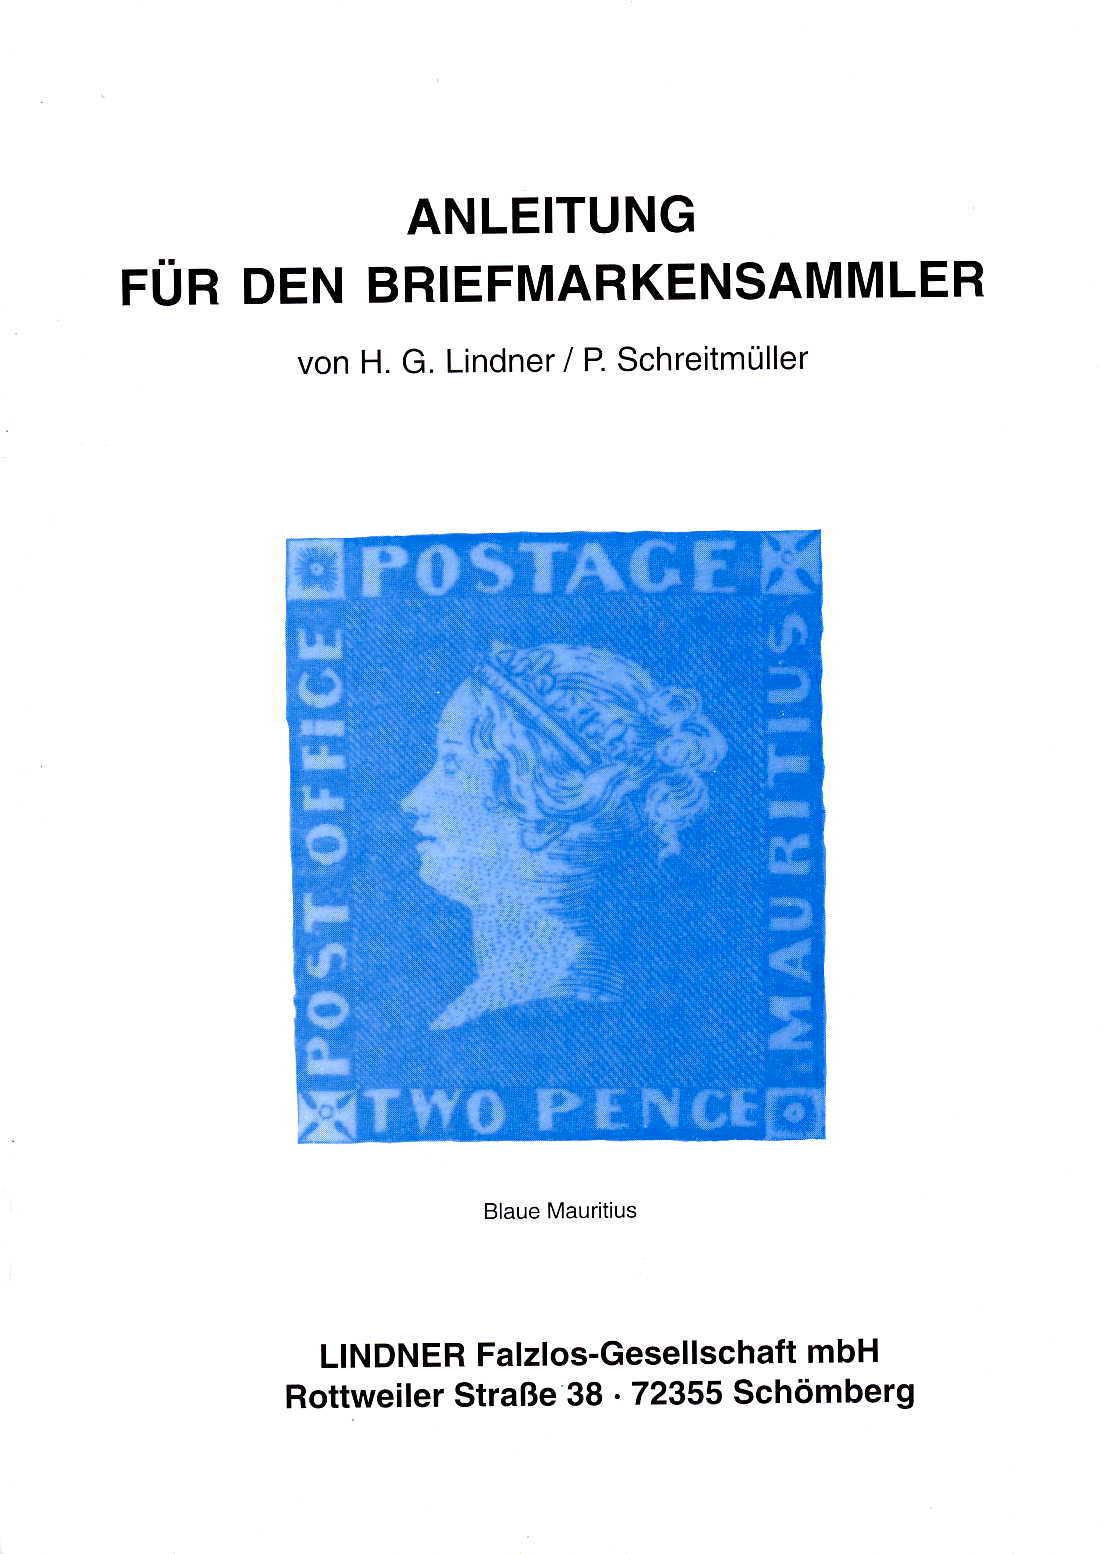 Lindner/Schreitmüller Anleitung für den Briefmarkensammler